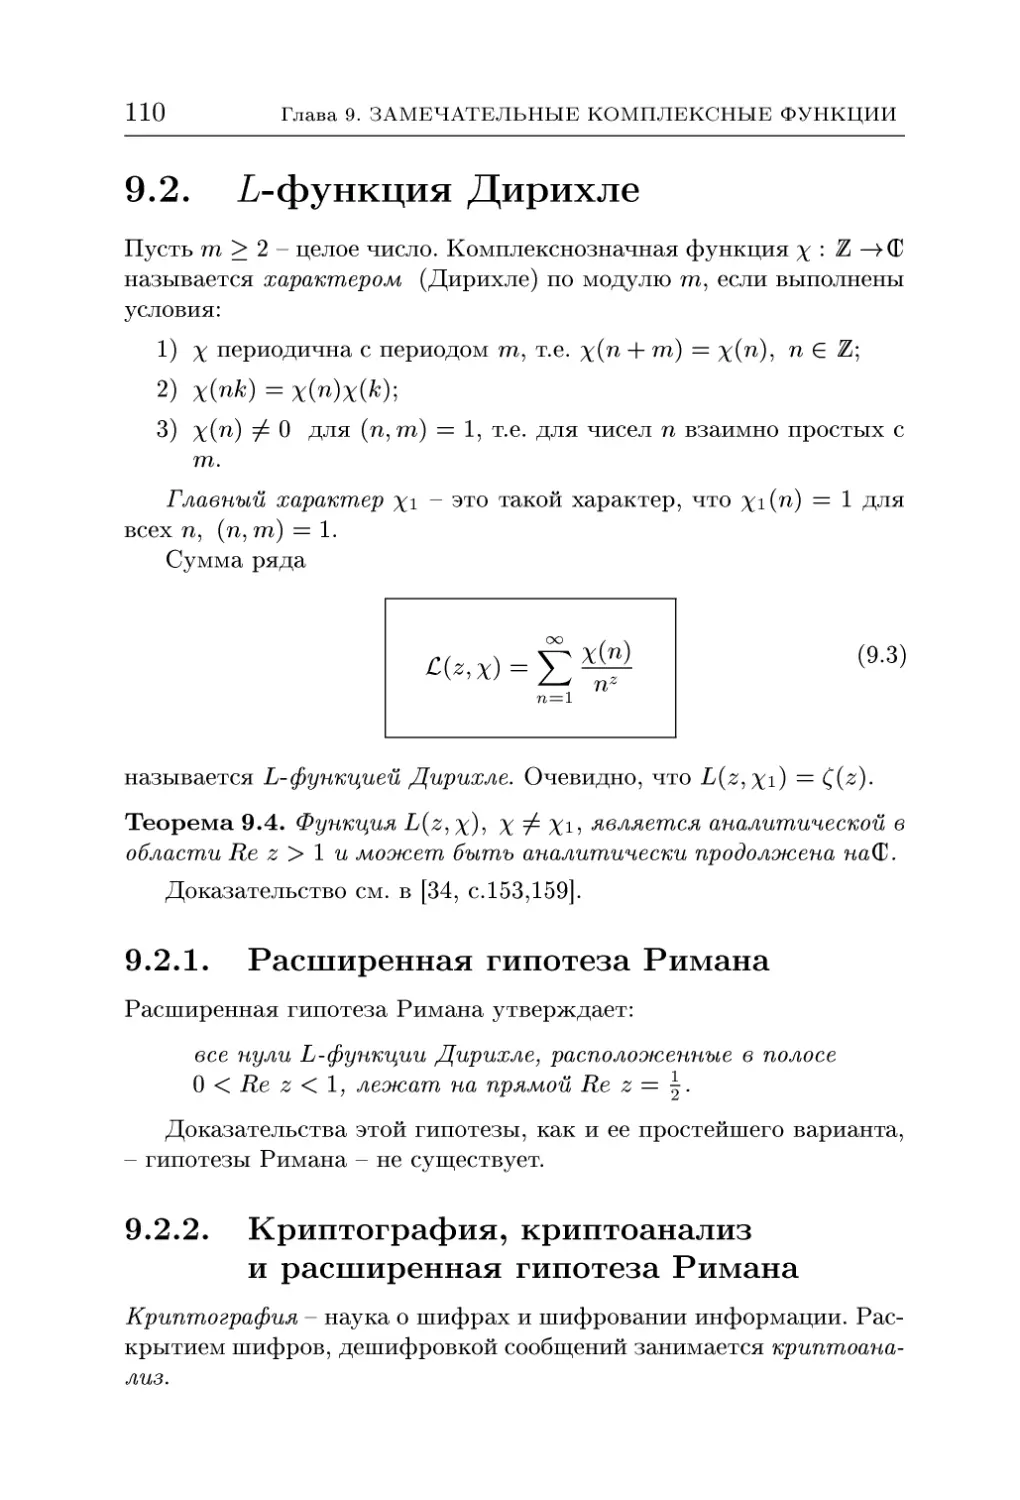 9.2. L-функция Дирихле
9.2.2. Криптография, криптоанализ и расширенная гипотеза Римана